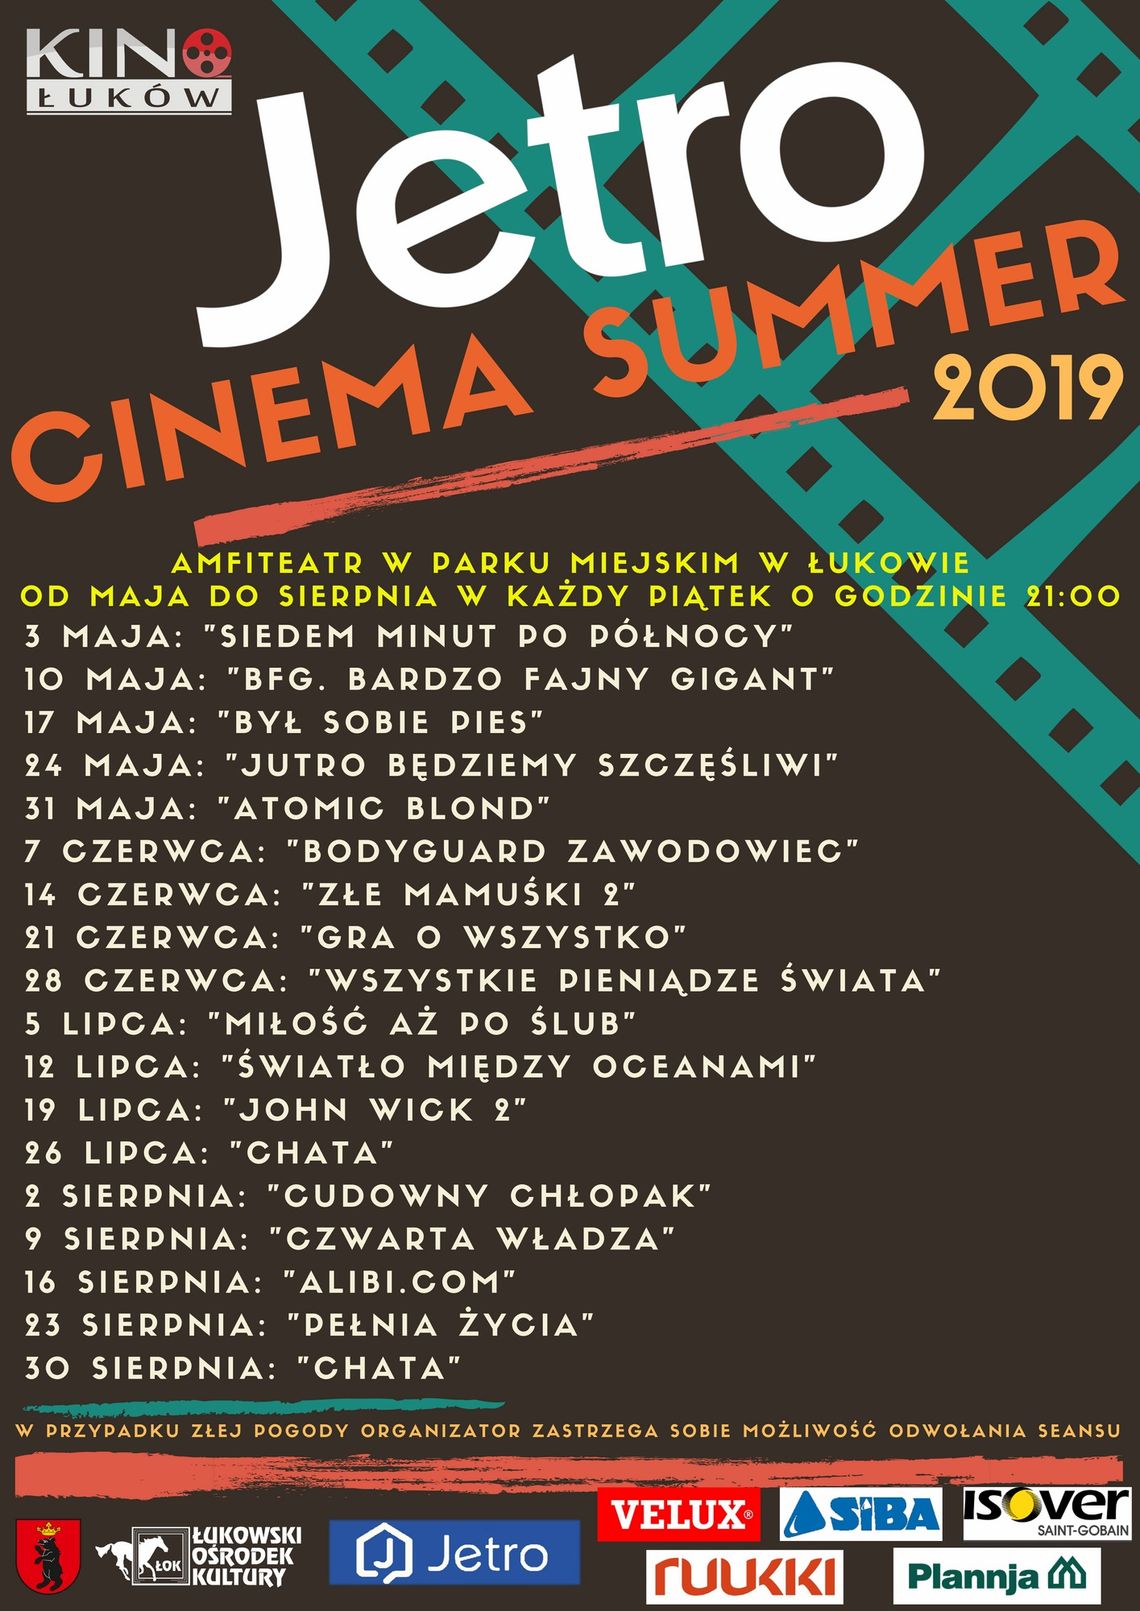 JETRO CINEMA SUMMER - „Czwarta władza”